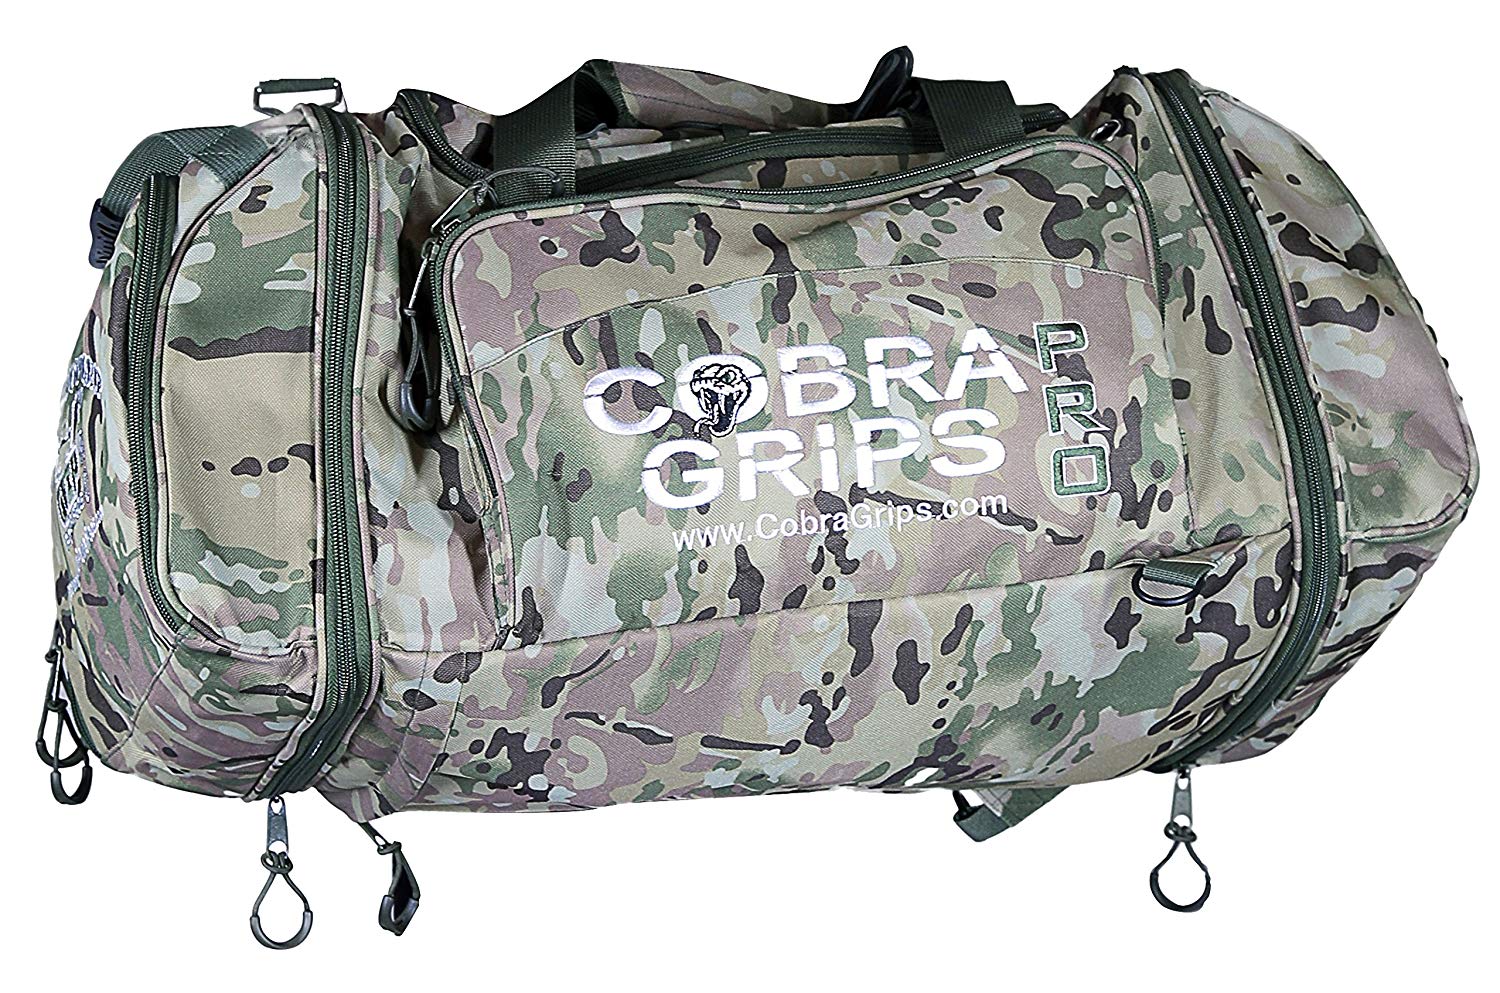 Cobra Grips crossfit bag